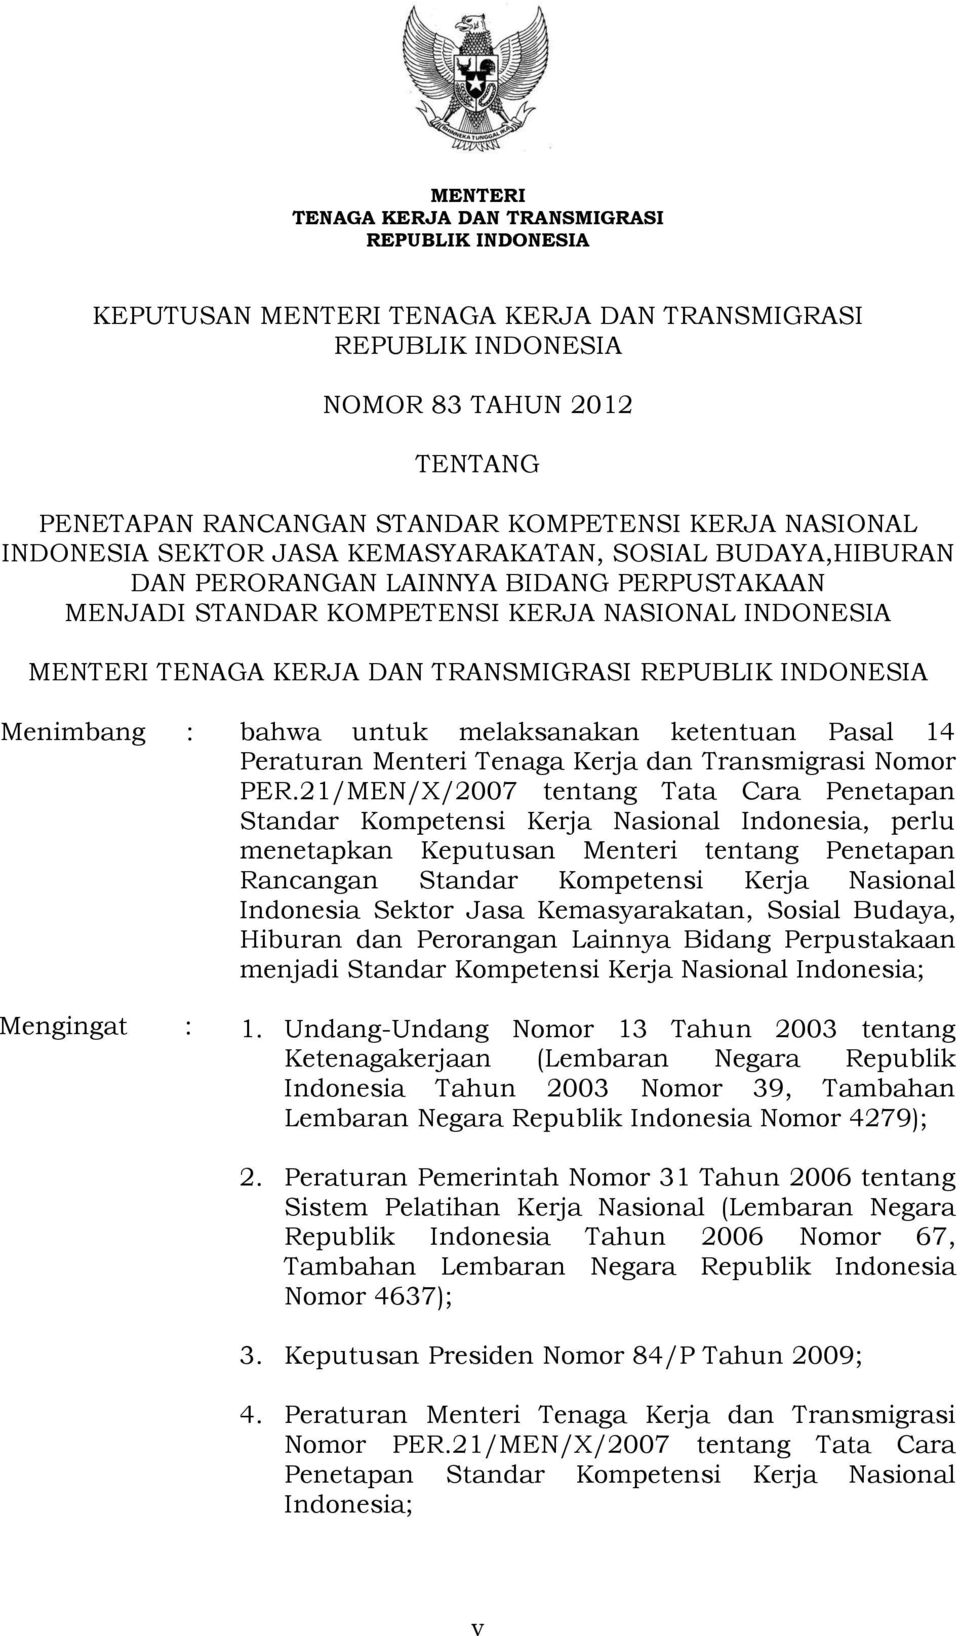 TRANSMIGRASI REPUBLIK INDONESIA Menimbang : bahwa untuk melaksanakan ketentuan Pasal 14 Peraturan Menteri Tenaga Kerja dan Transmigrasi Nomor PER.